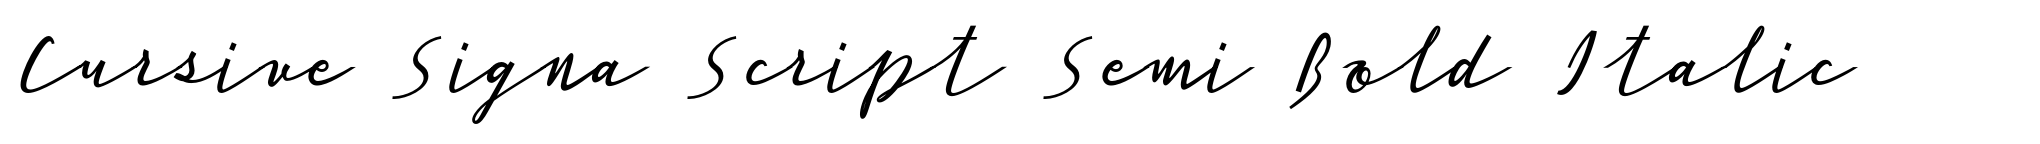 Cursive Signa Script Semi Bold Italic image